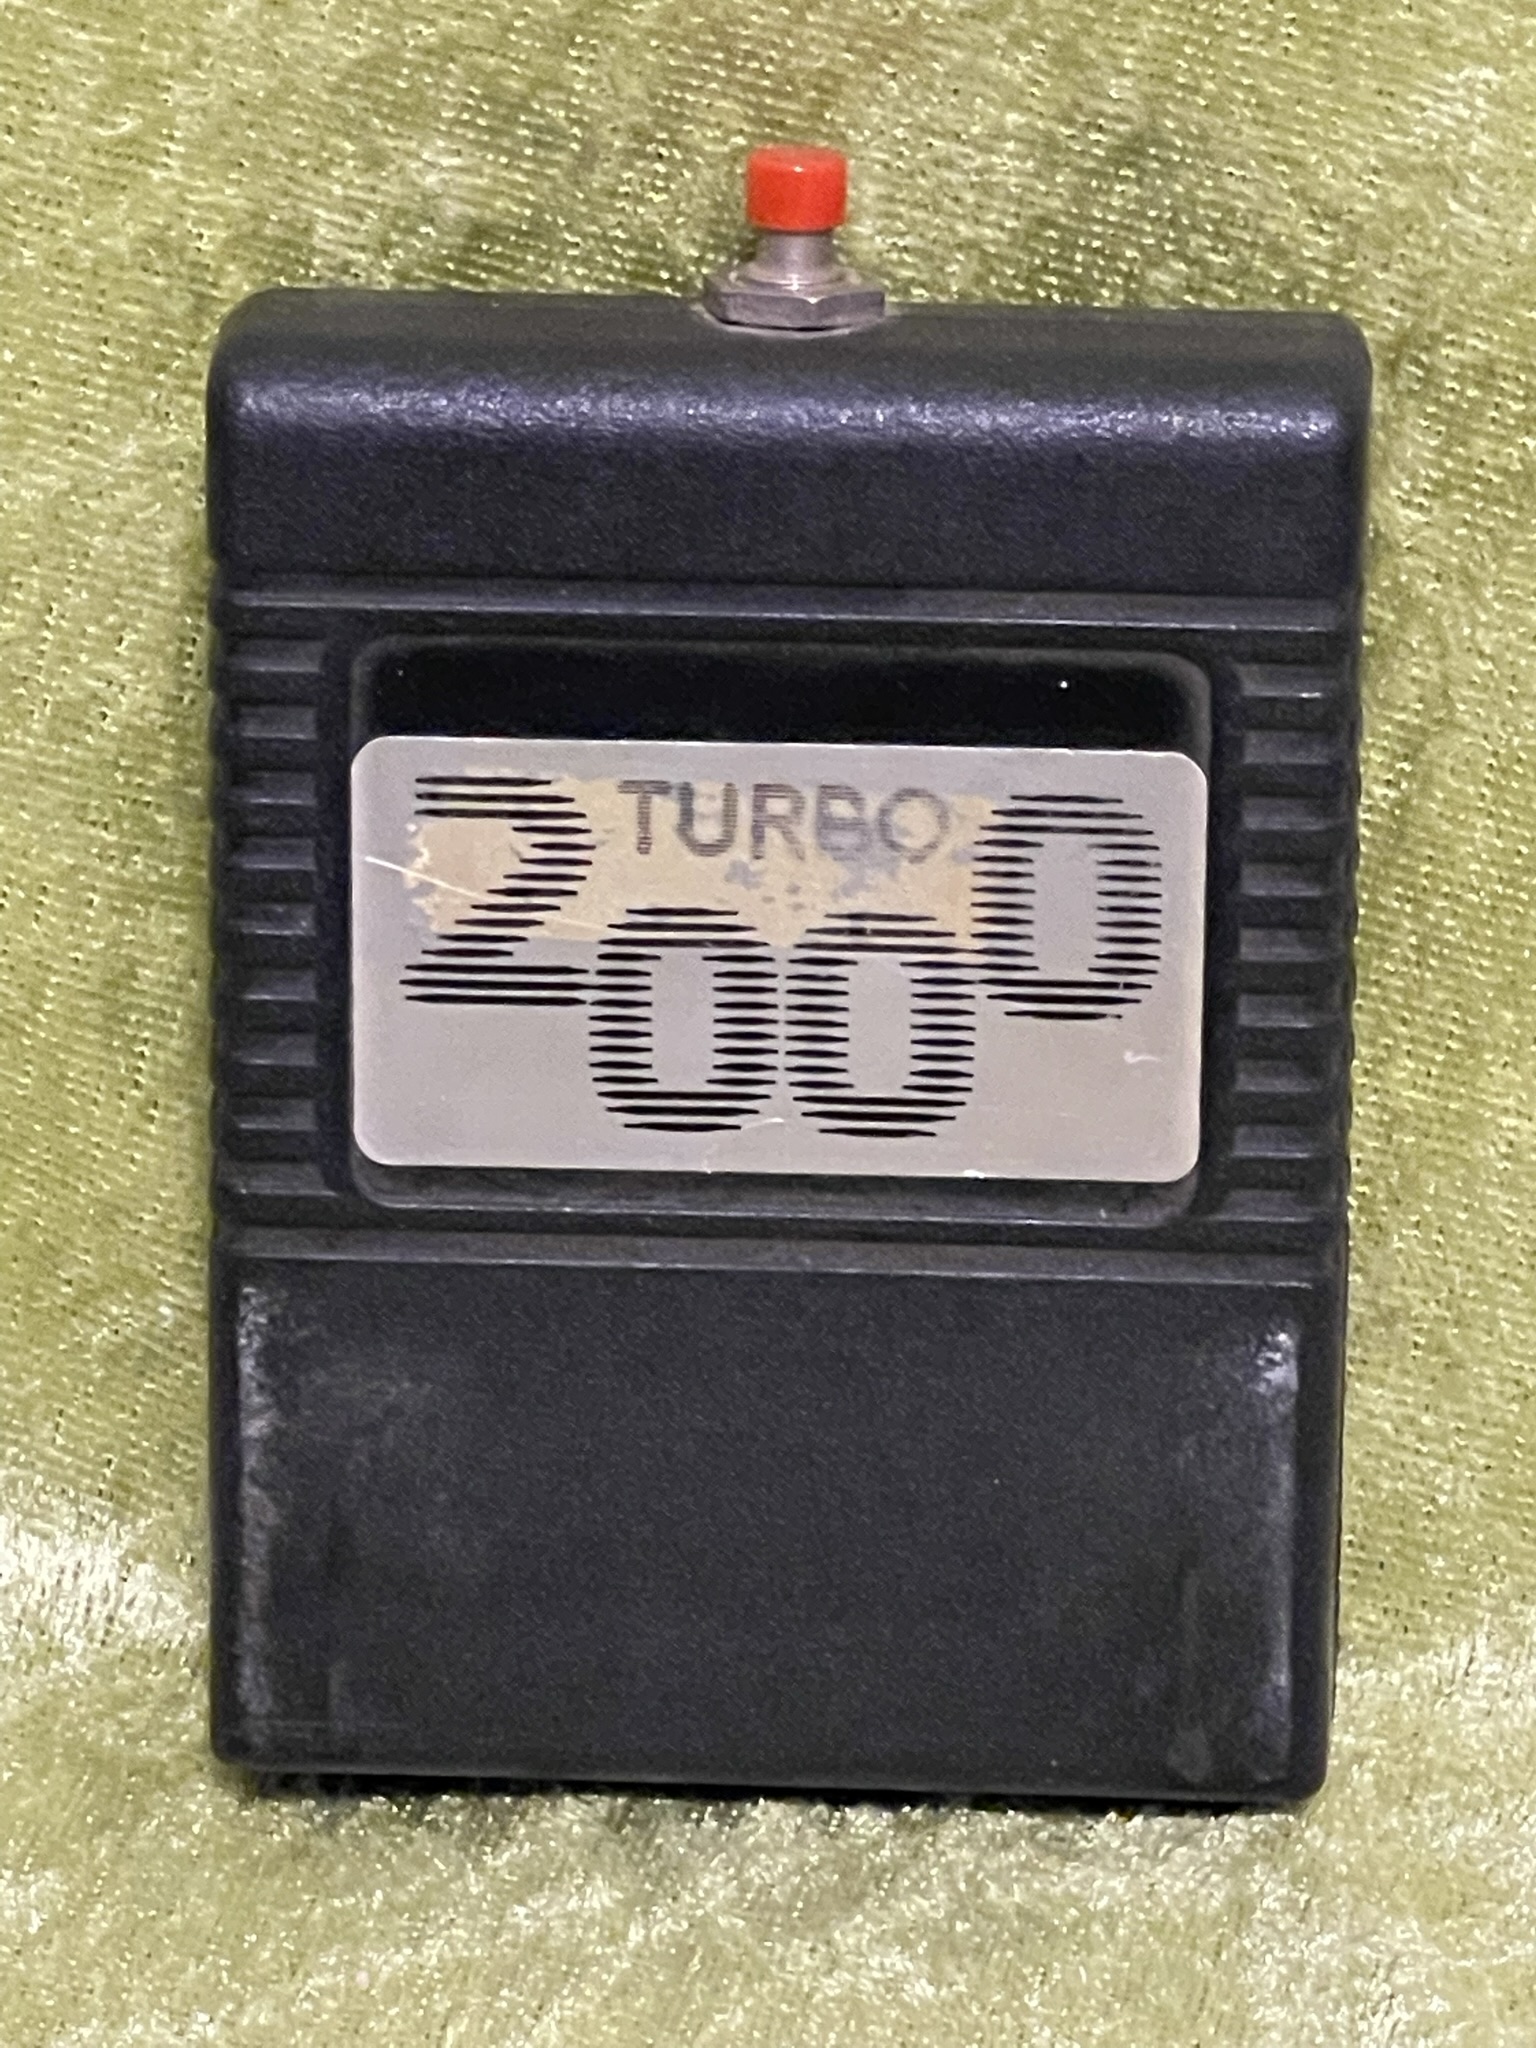 Turbo 2000